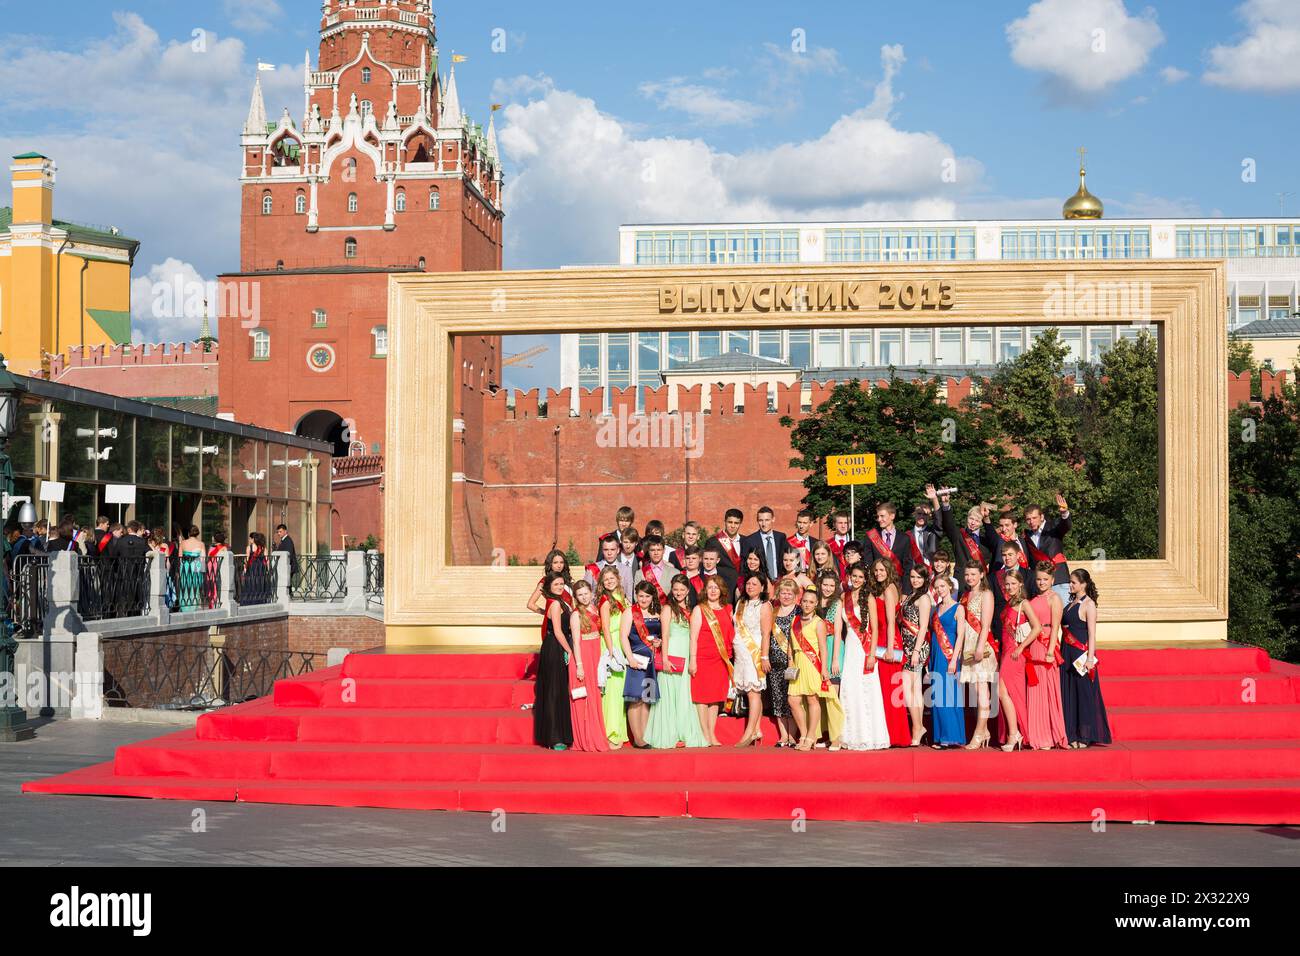 MOSKAU - 23. Juni 2013: Die Absolventen werden vor einem großen Rahmen auf dem Saposchkowaya-Platz in der Nähe des Kremls fotografiert. Stockfoto